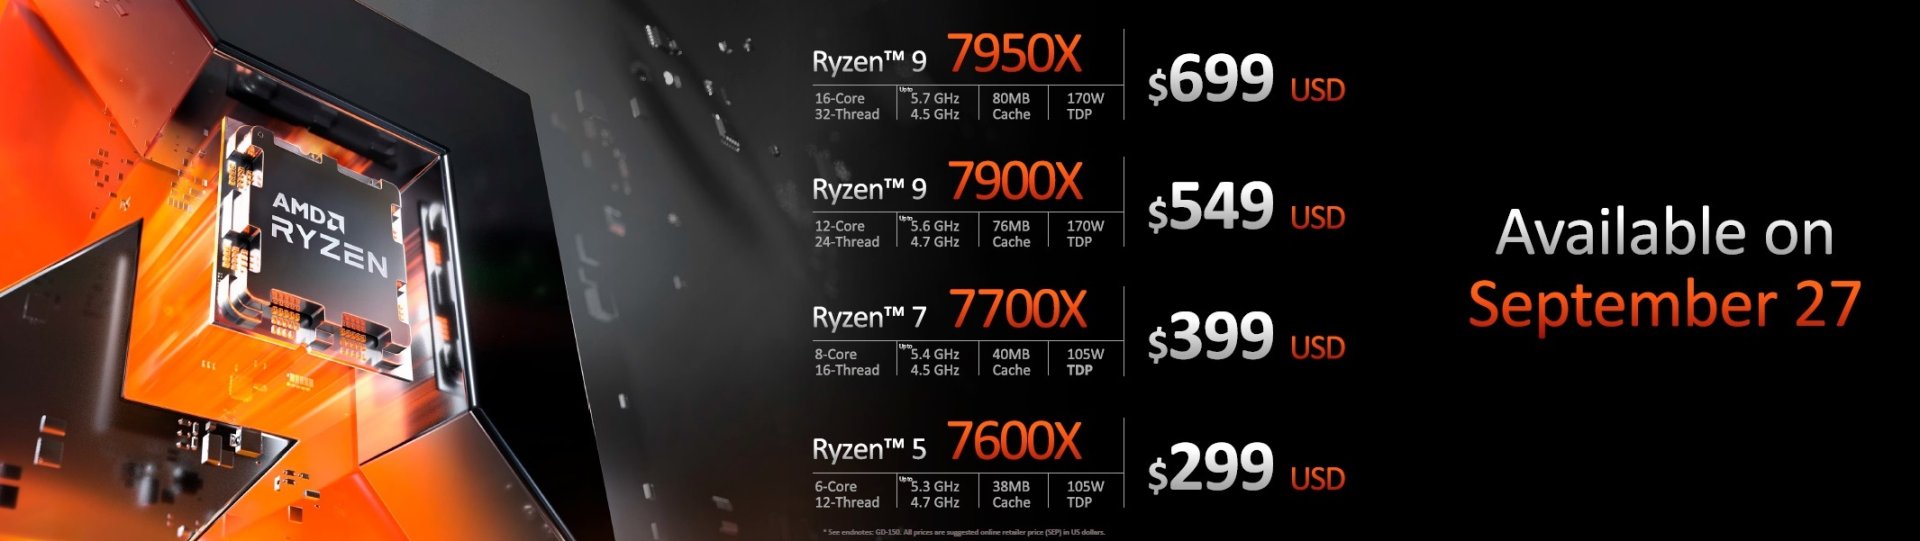 AMD Ryzen 7000 CPU series details